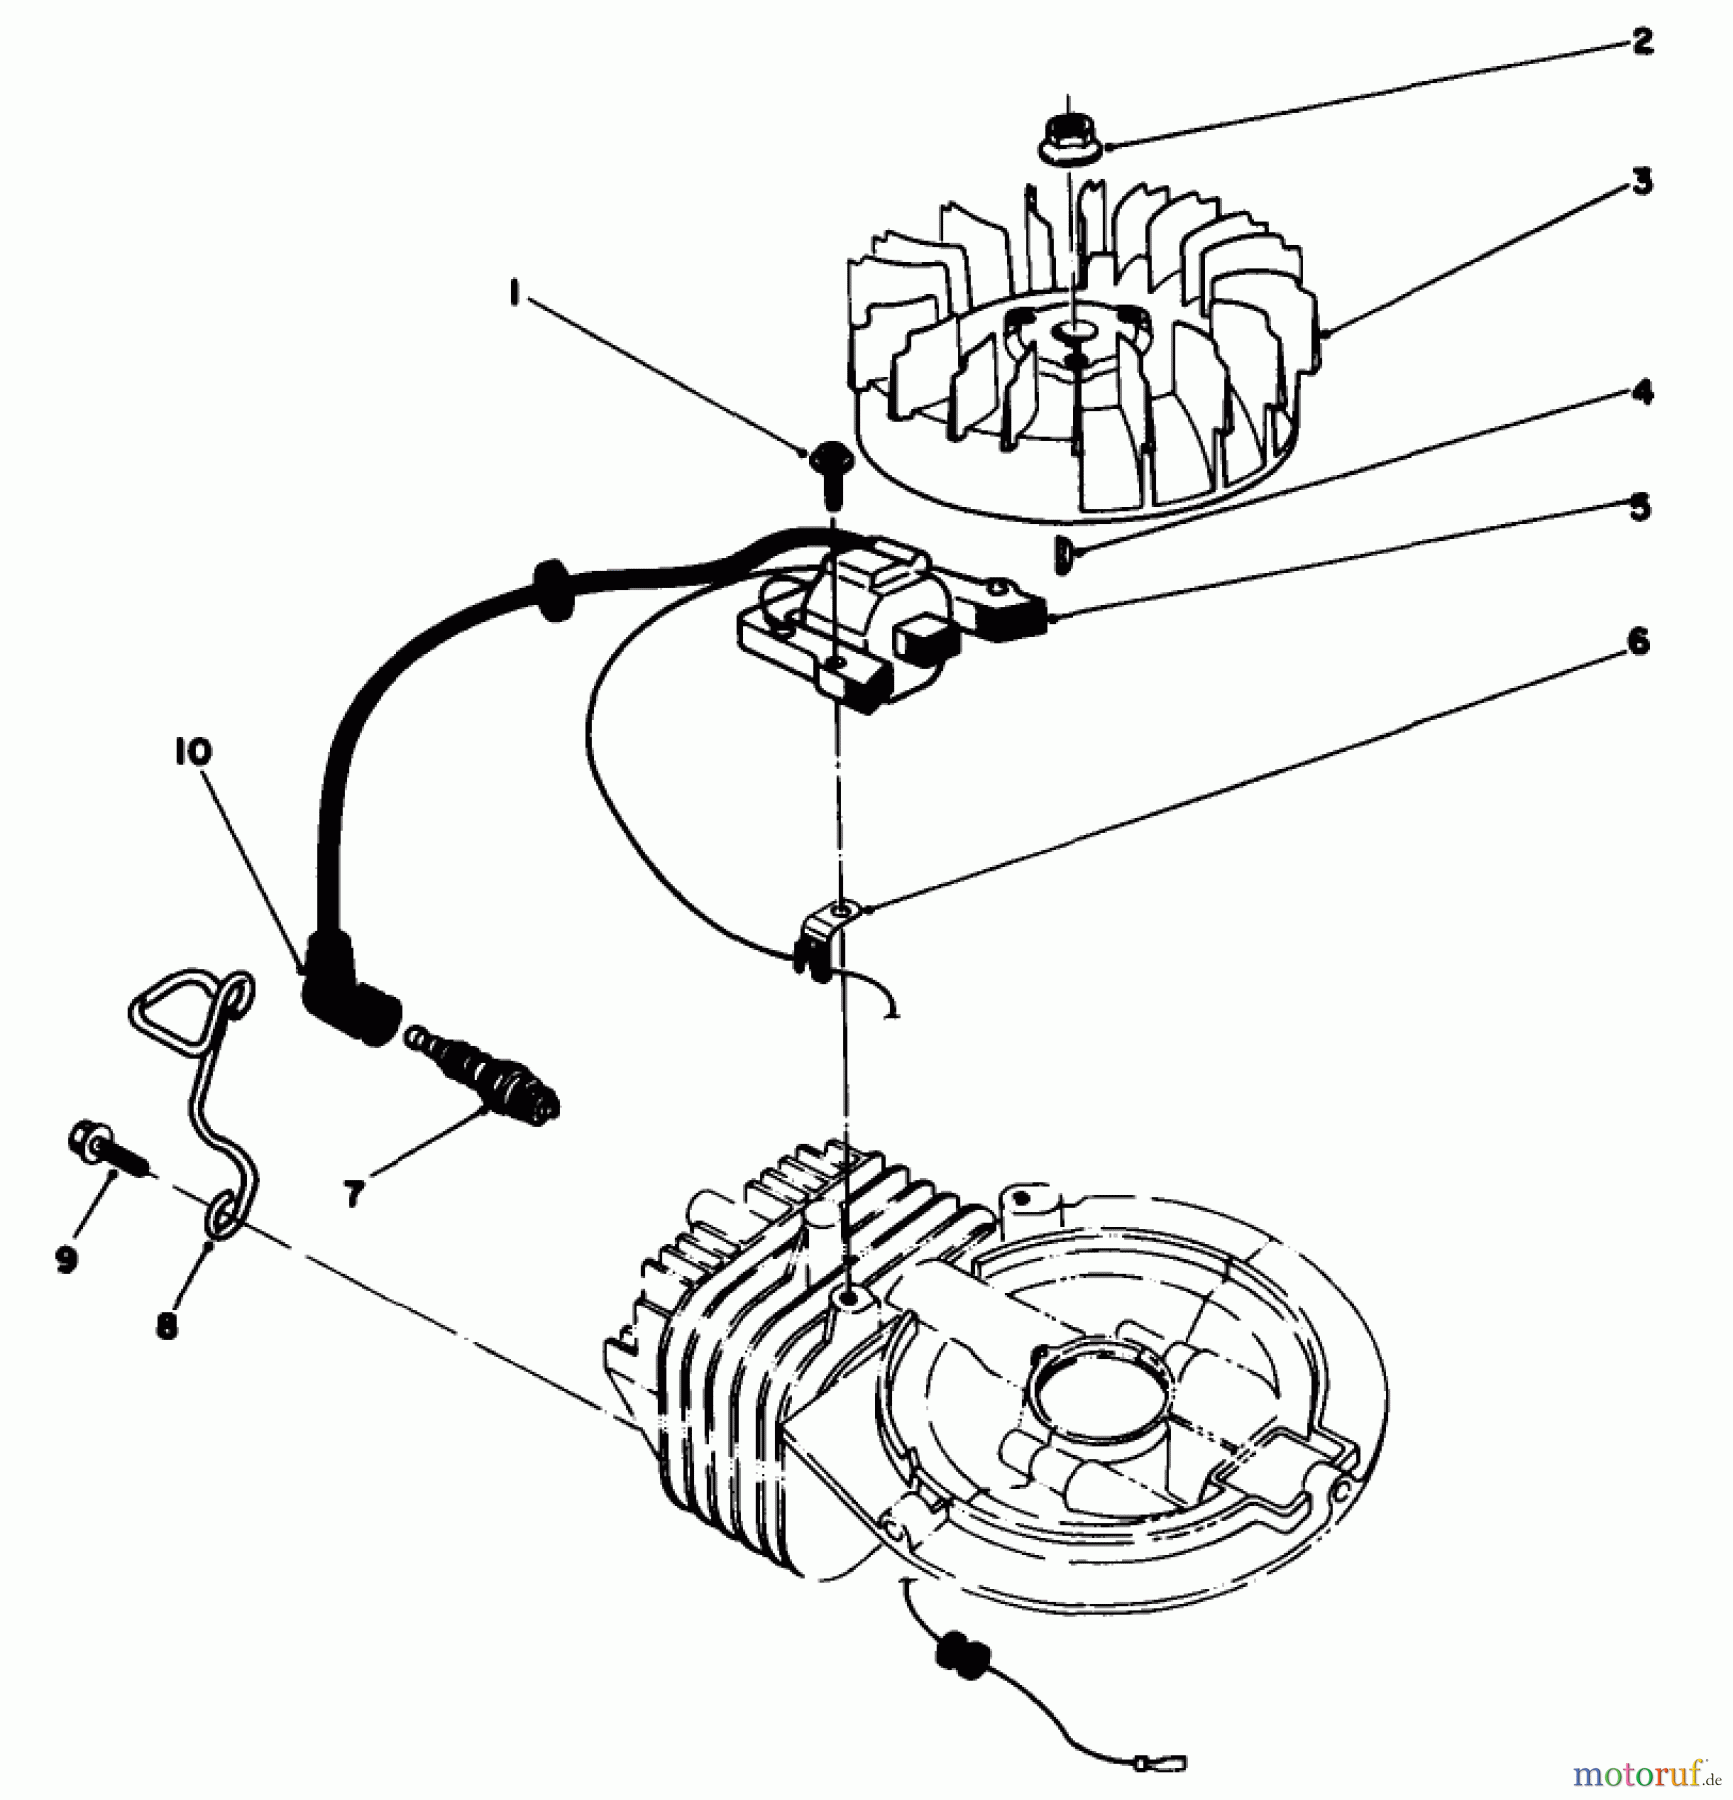  Toro Neu Mowers, Walk-Behind Seite 2 22030 - Toro Lawnmower, 1988 (8000001-8999999) ENGINE ASSEMBLY MODEL NO. 47PH7 #2